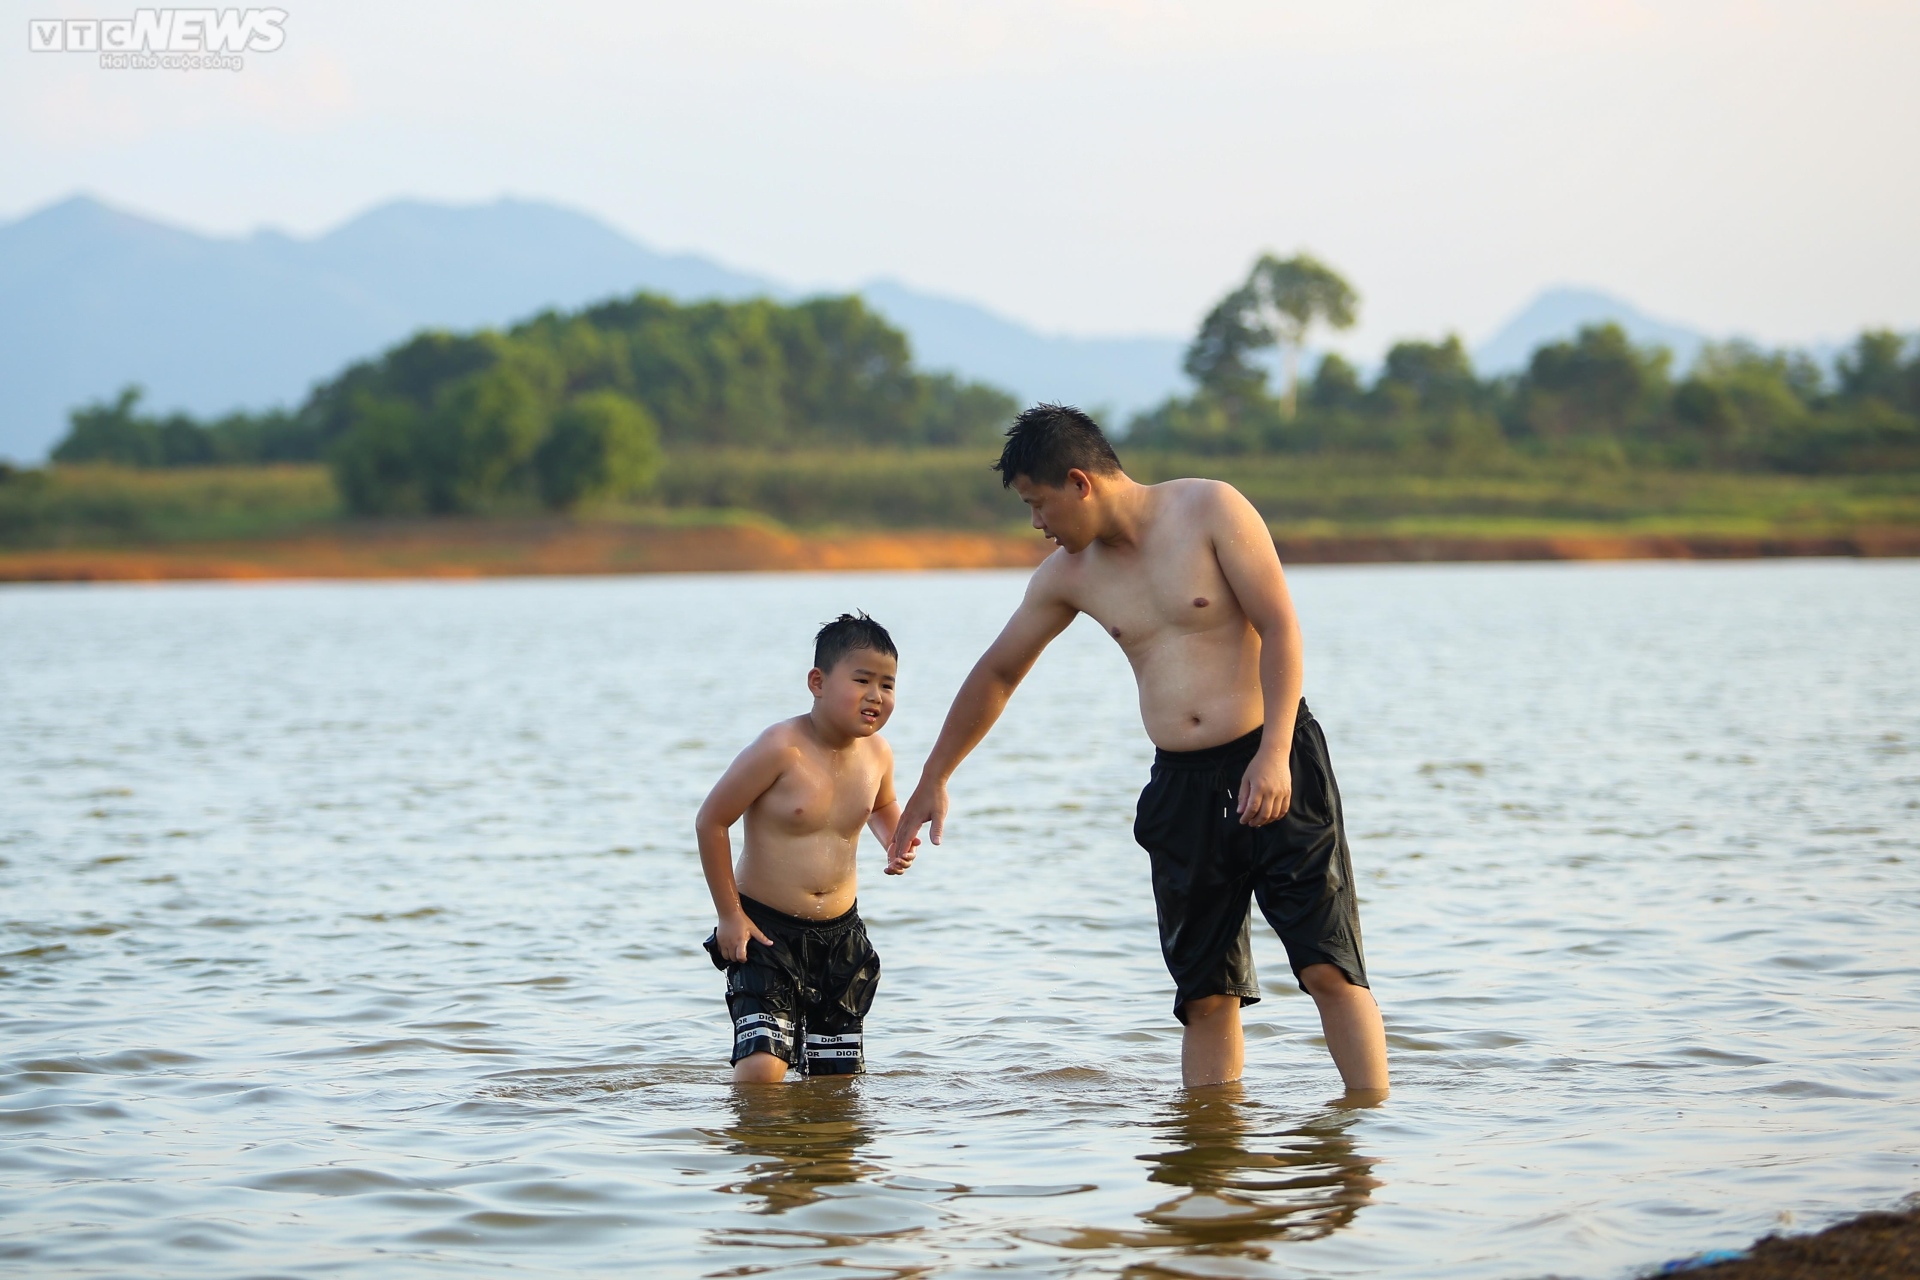 Chiều hè đổ lửa, người dân Hà Nội tìm sông hồ giải nhiệt - ảnh 9